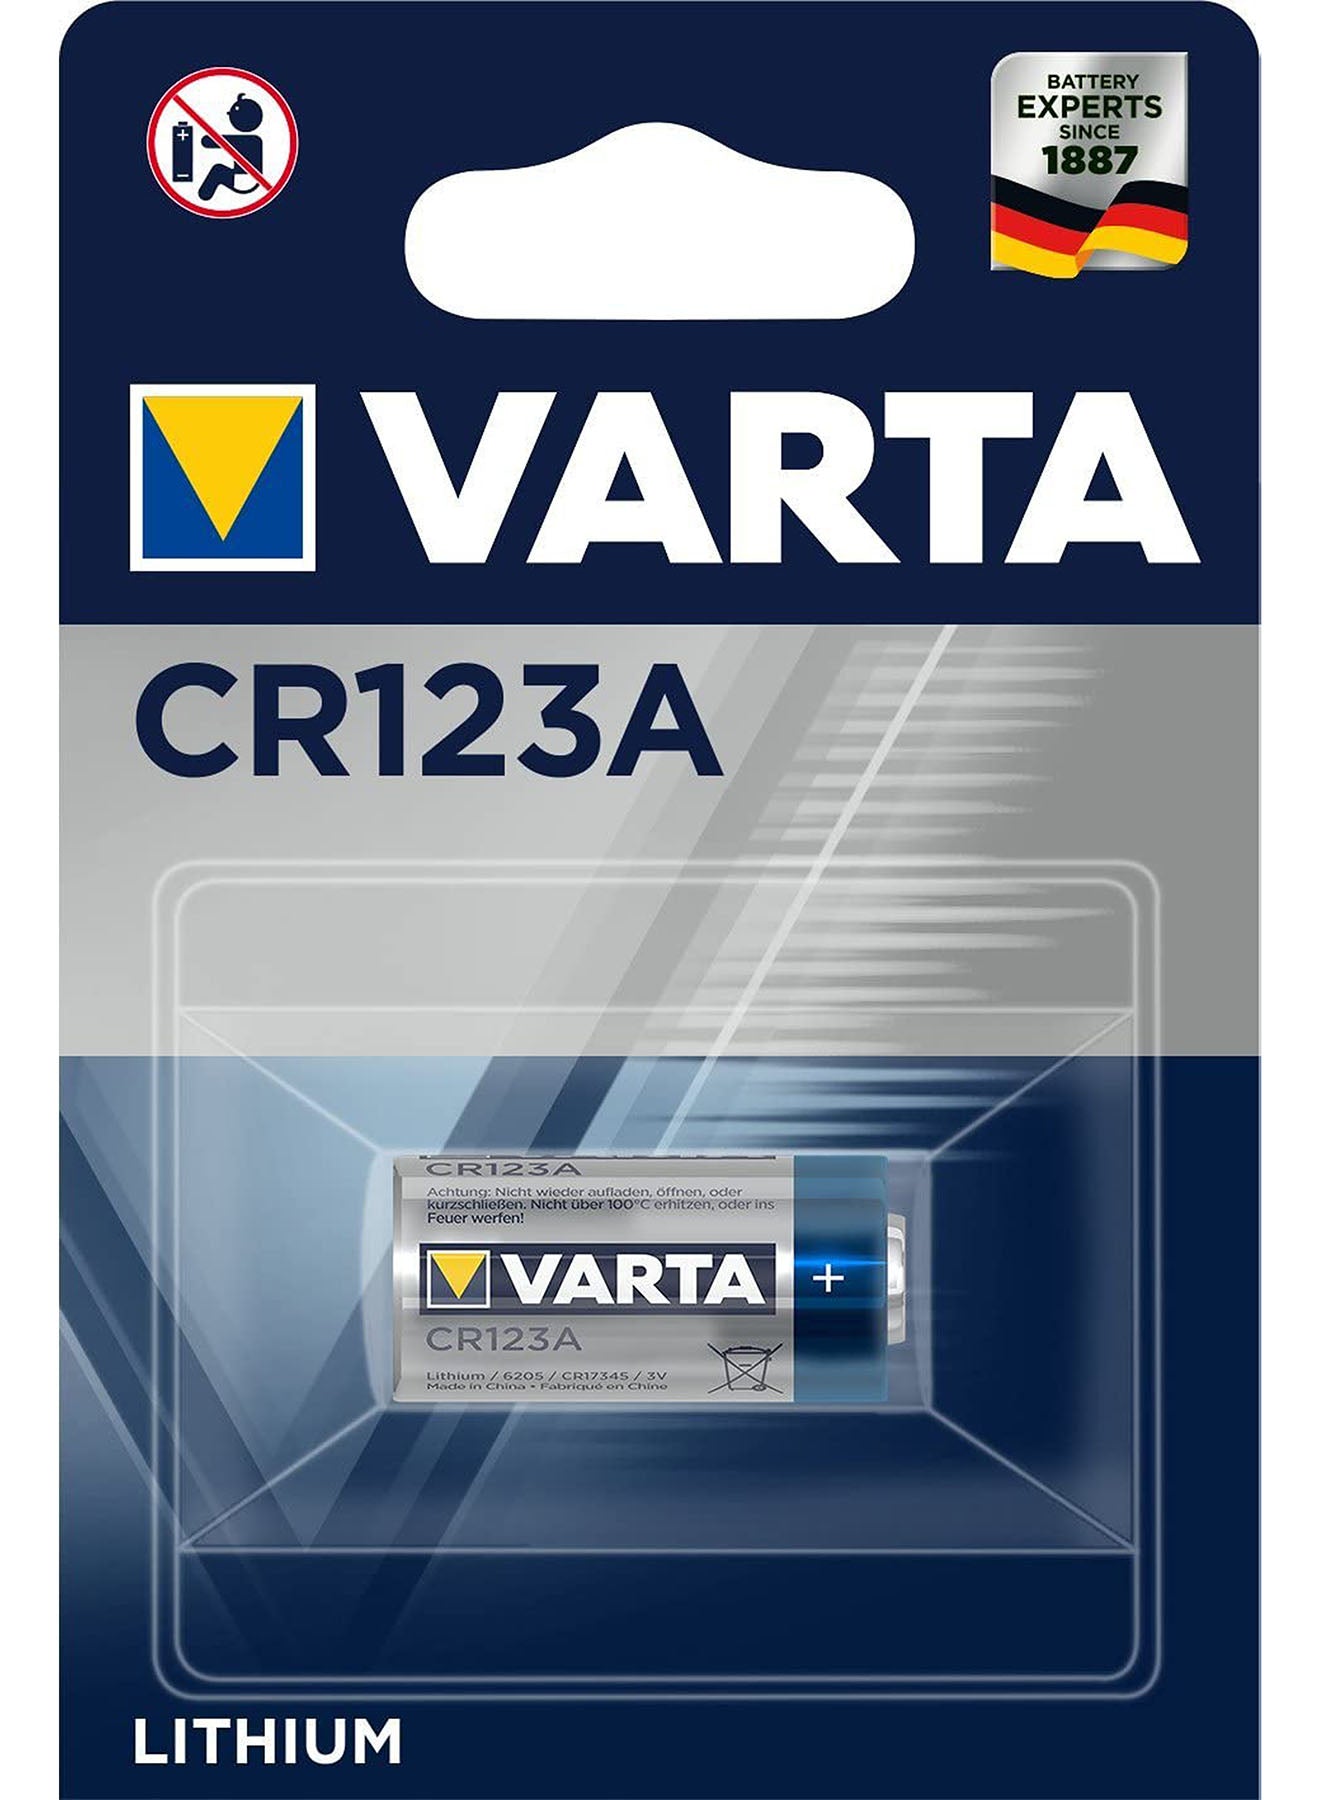 Varta Lithium CR 123A Batteries